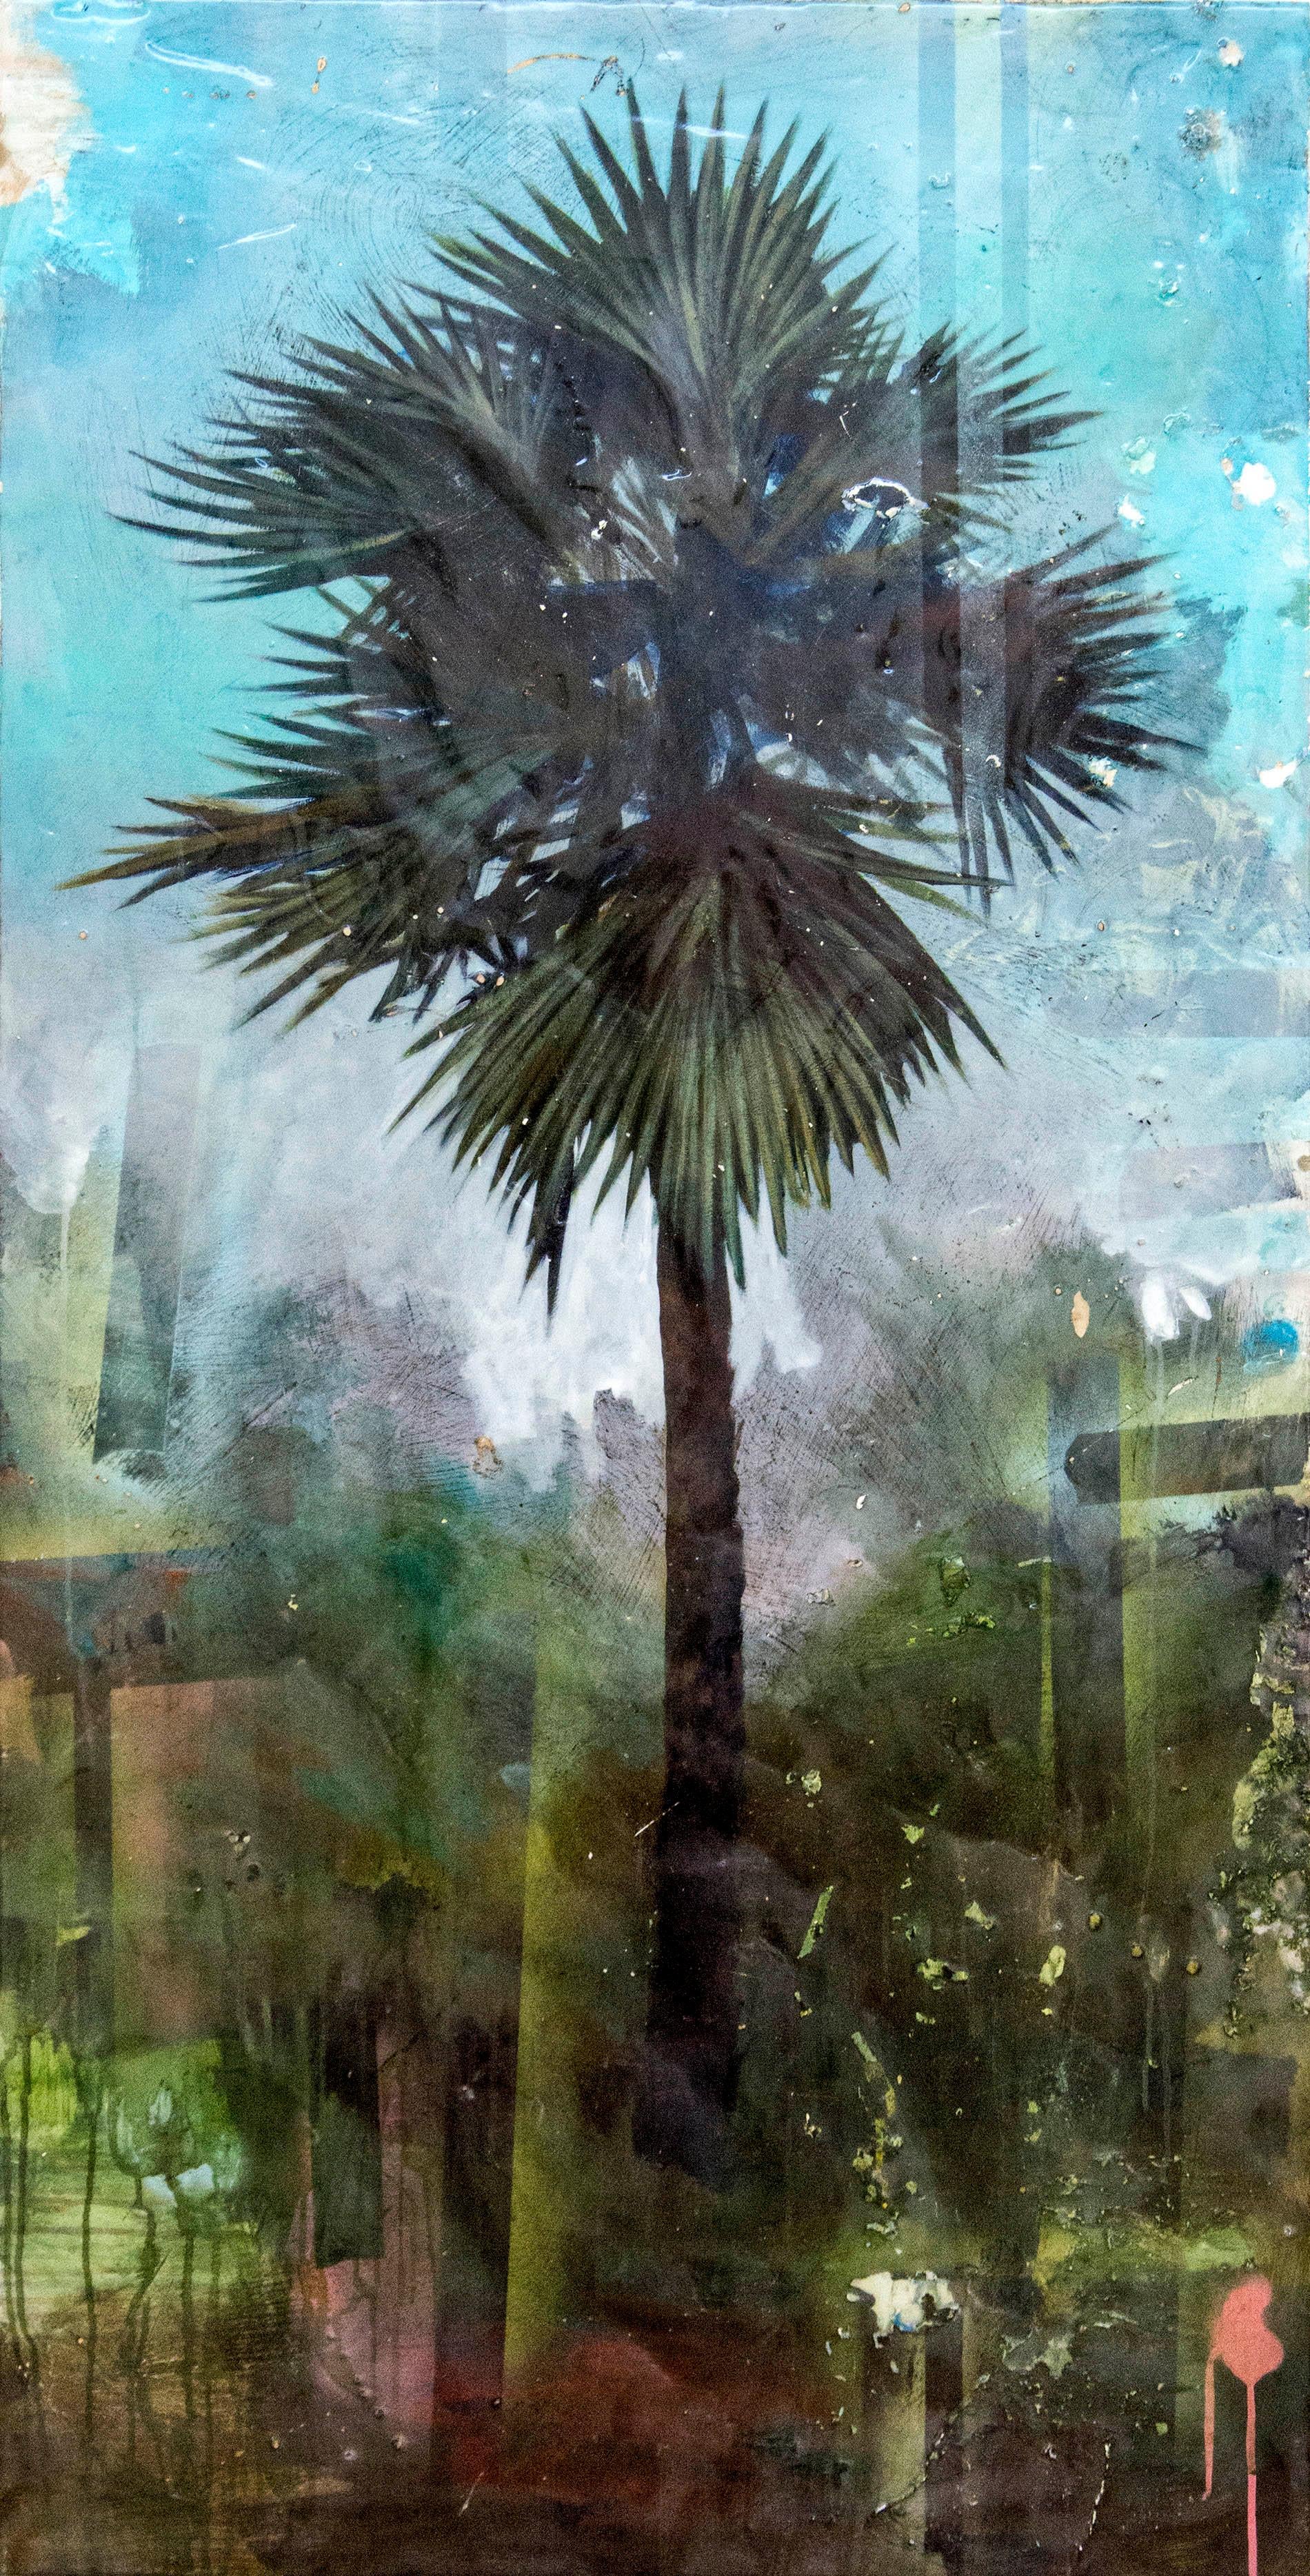 Palmier - tropical, vert, bleu, contemporain, acrylique et résine sur panneau - Mixed Media Art de Peter Hoffer